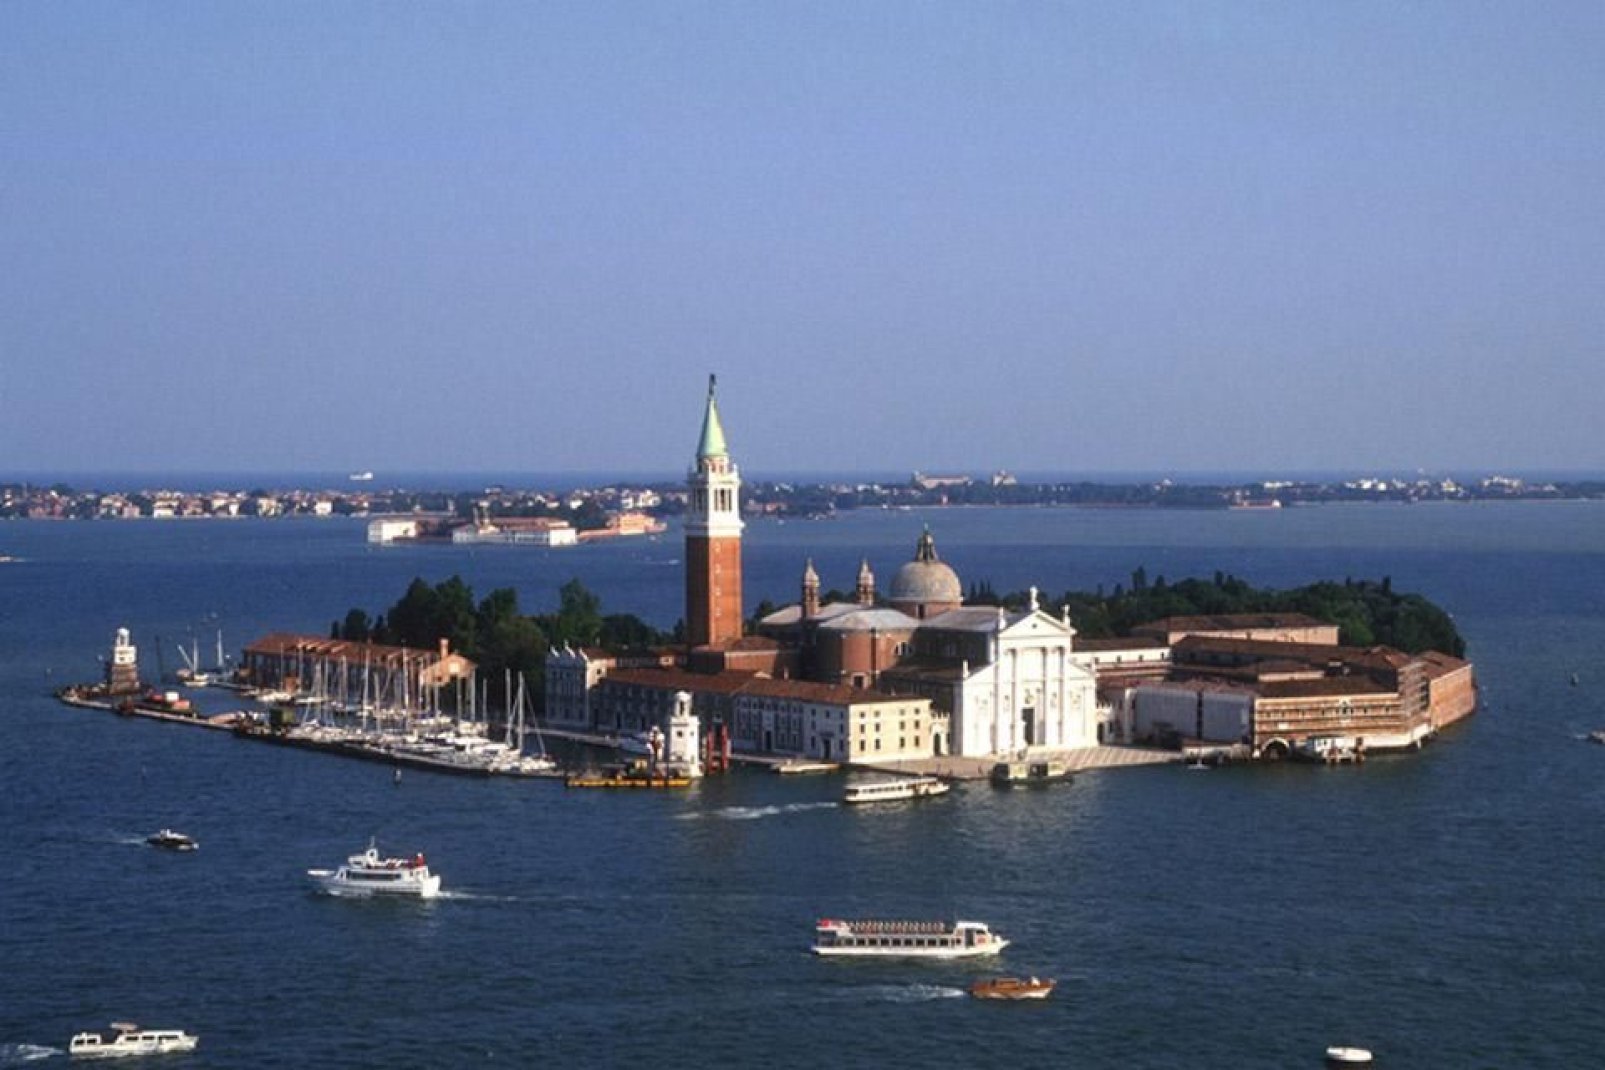 Die Insel San Giorgio Maggiore befindet sich gegenüber dem Markusplatz und ist der Standort des gleichnamigen Domes.